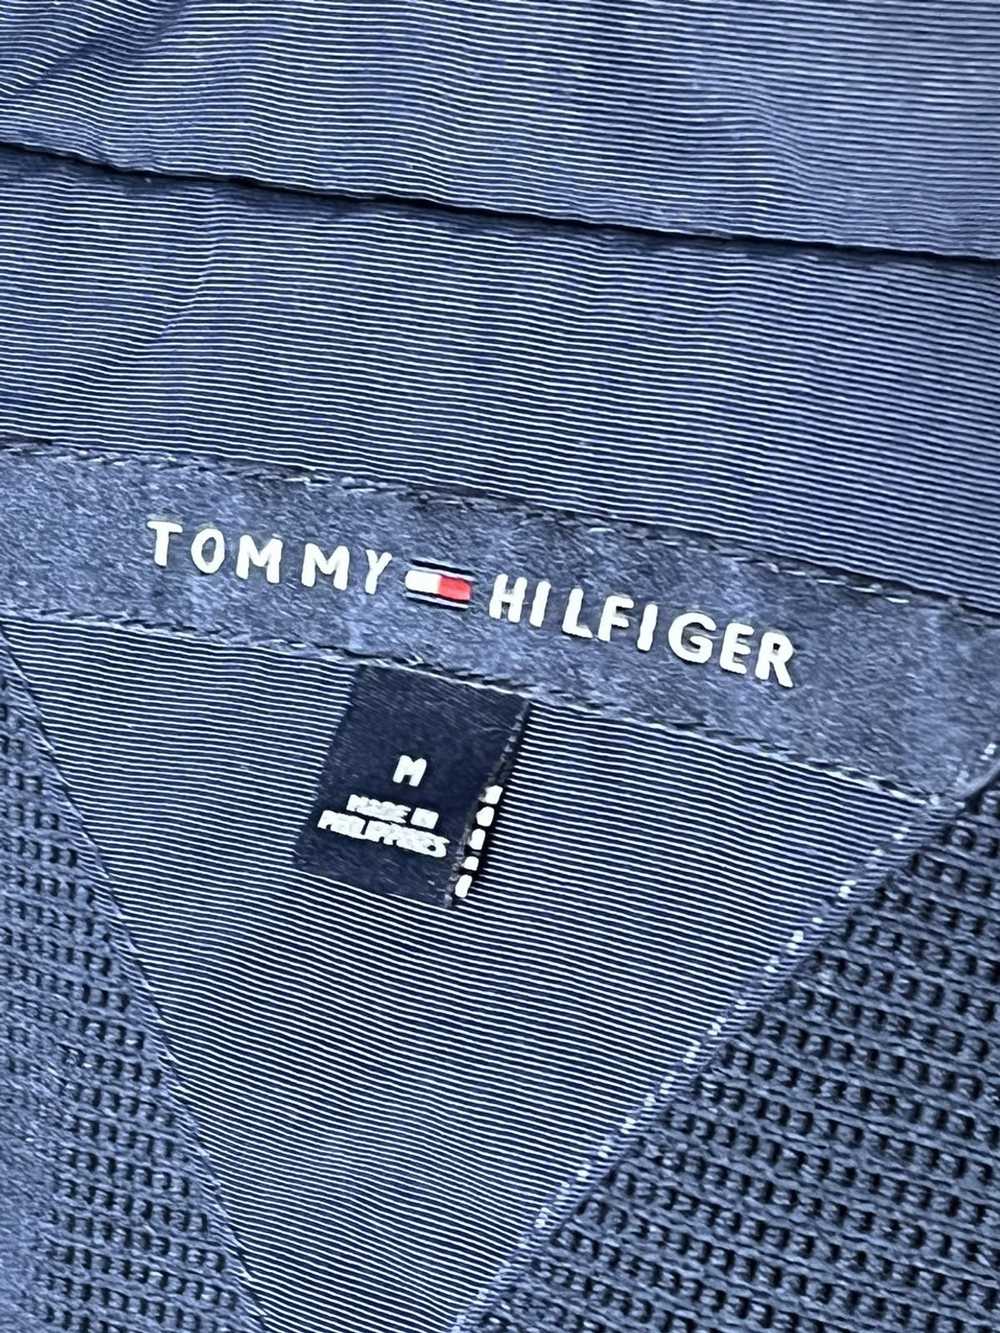 Tommy Hilfiger Tommy Hilfiger Light Rain Jacket - image 5